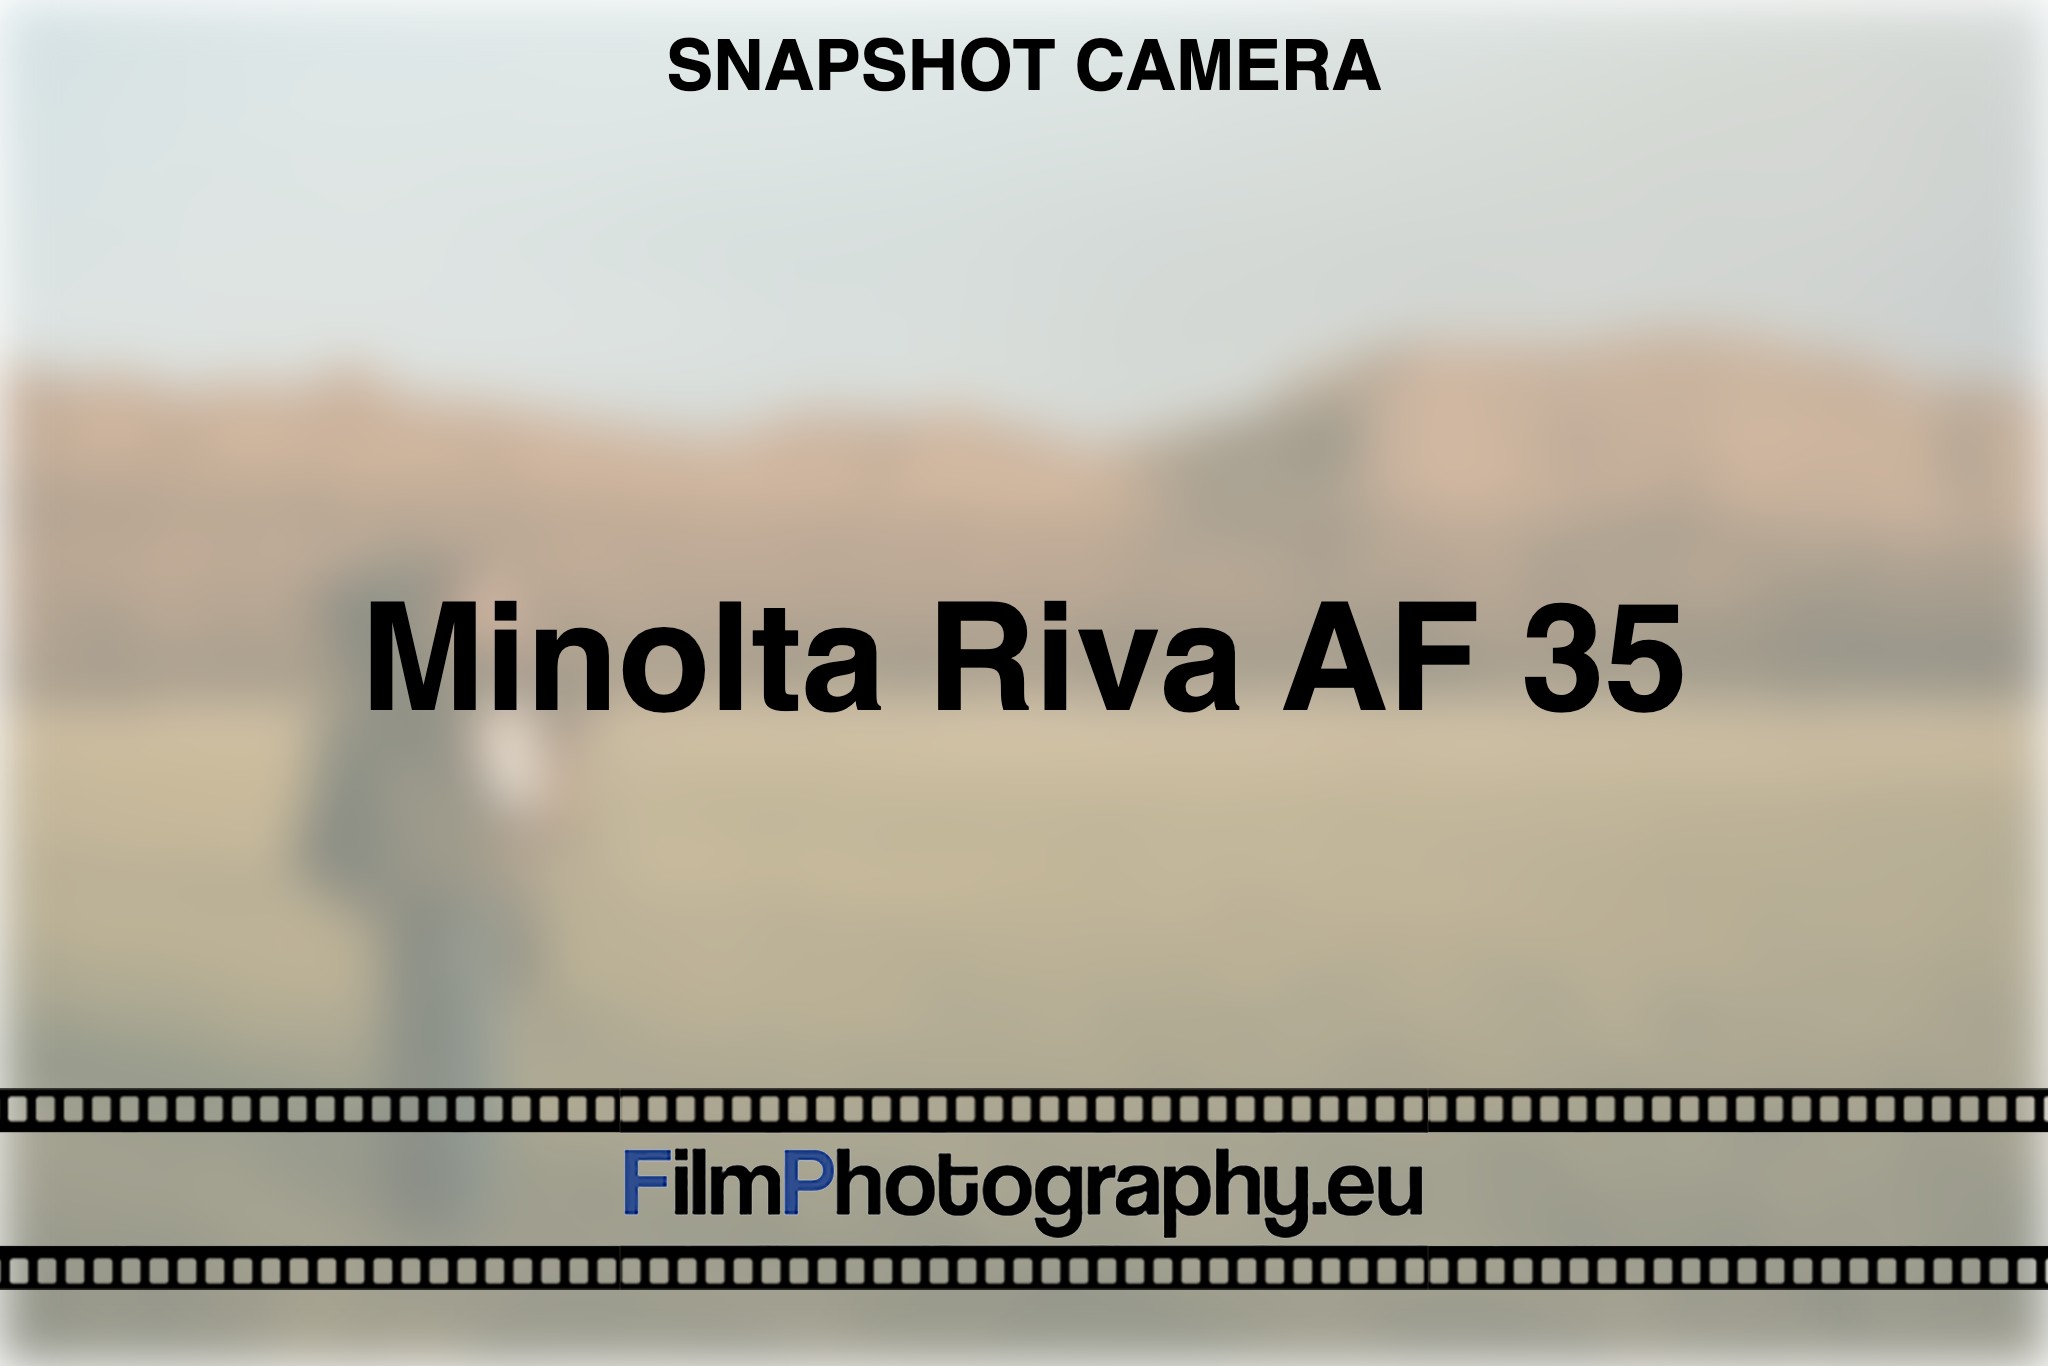 minolta-riva-af-35-snapshot-camera-bnv